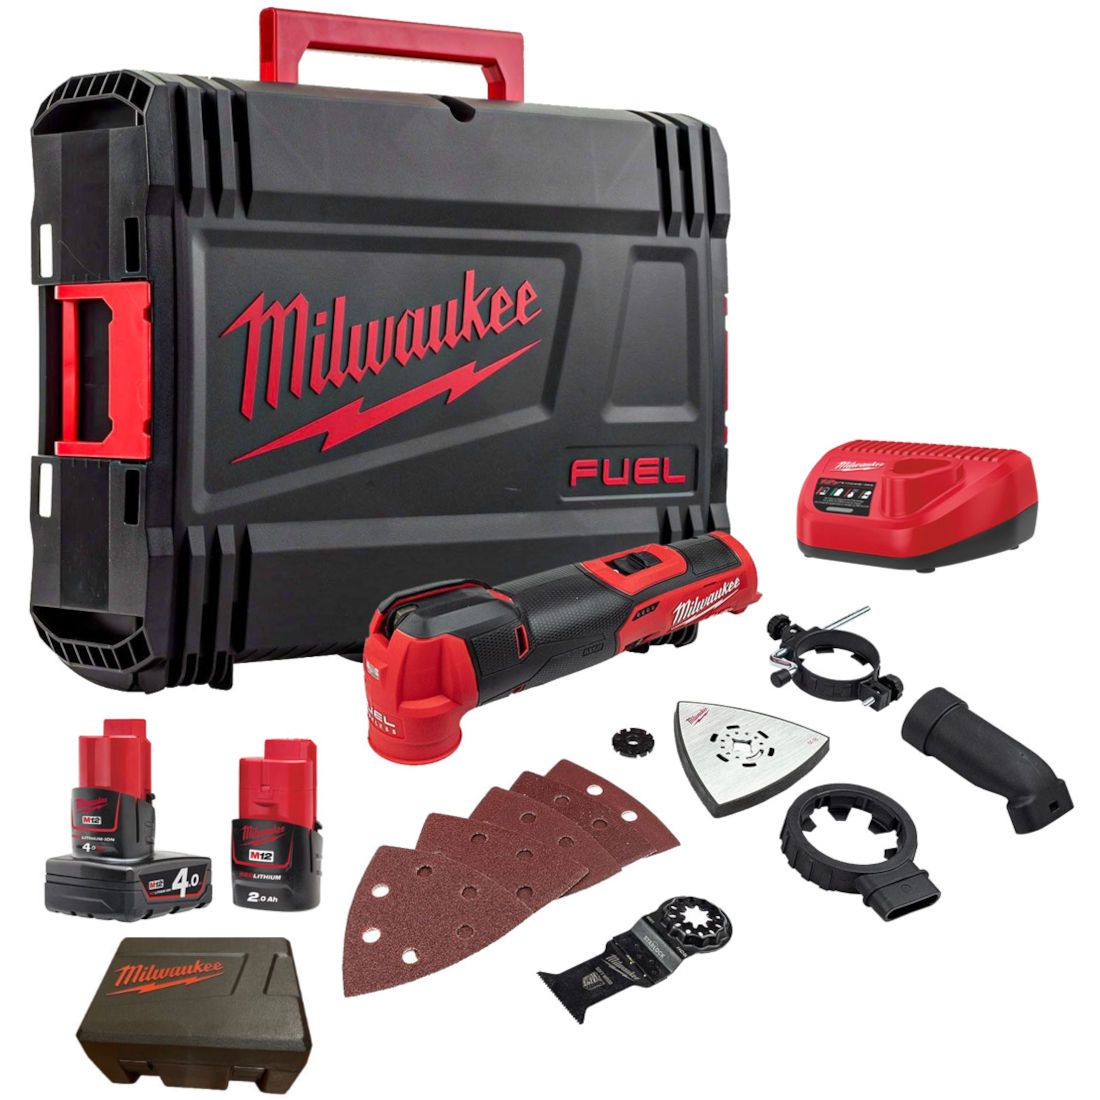 Milwaukee M12 Cordless Kits